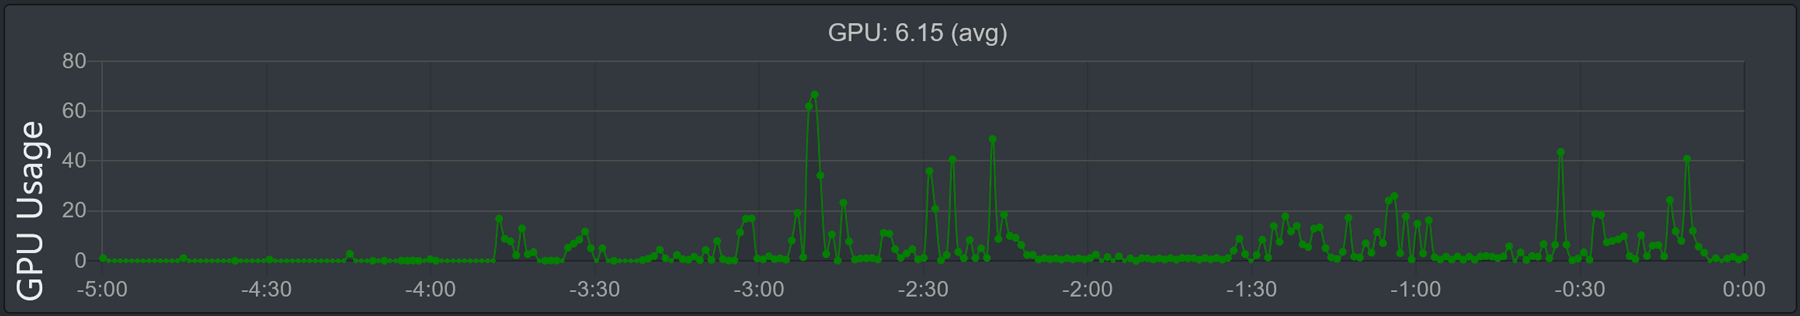 Image du graphique "Utilisation du GPU"